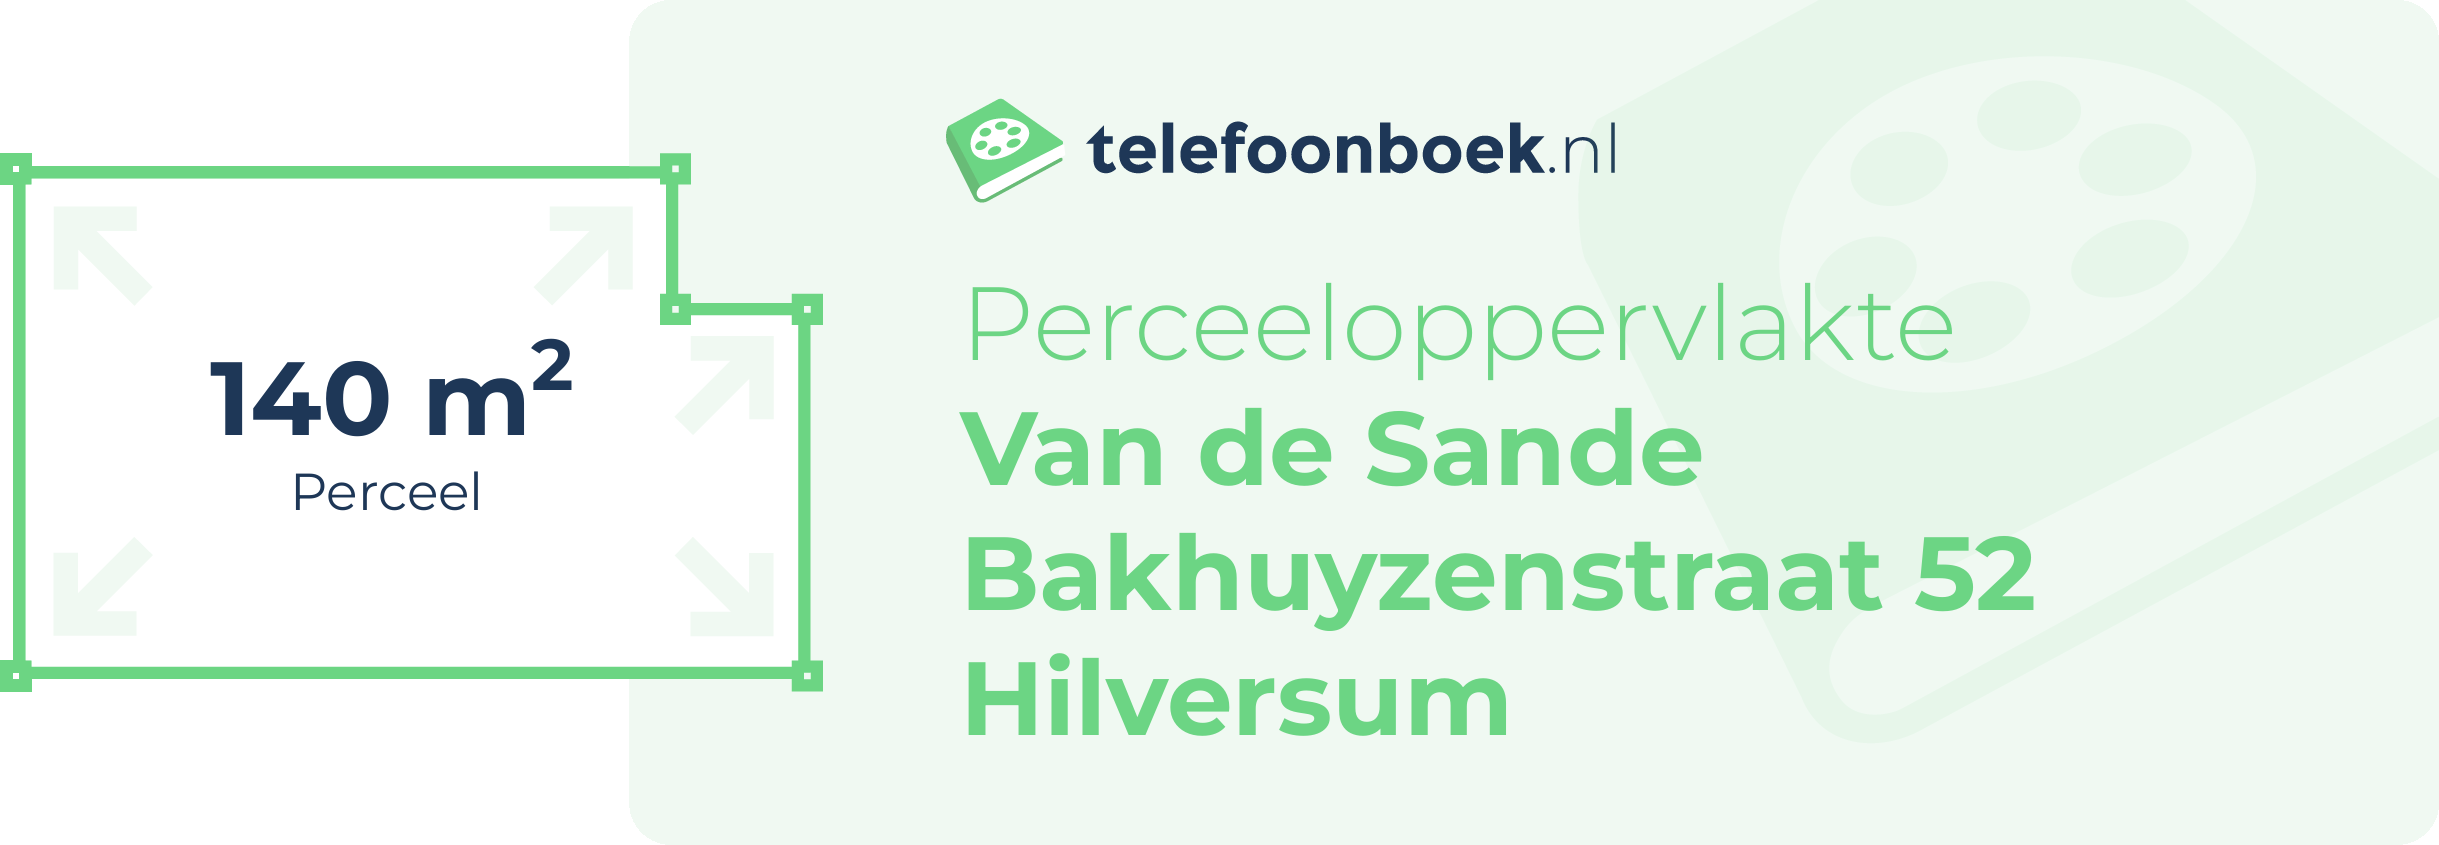 Perceeloppervlakte Van De Sande Bakhuyzenstraat 52 Hilversum